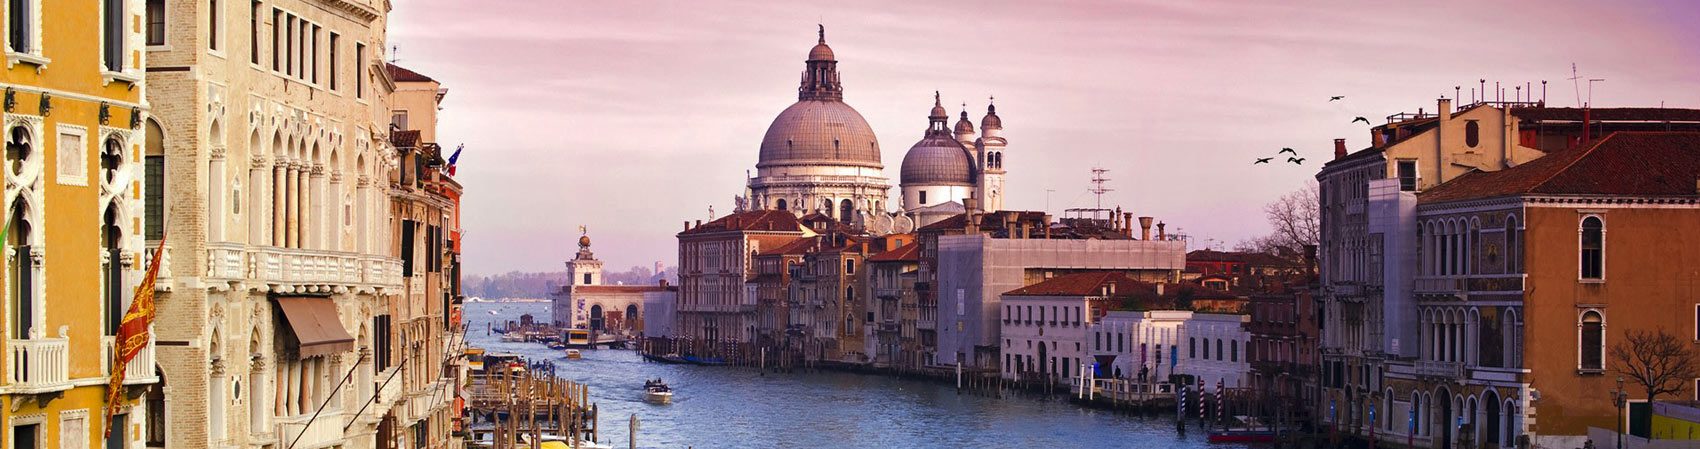 Venecia, Italia: Tour en barco del Canal Grande